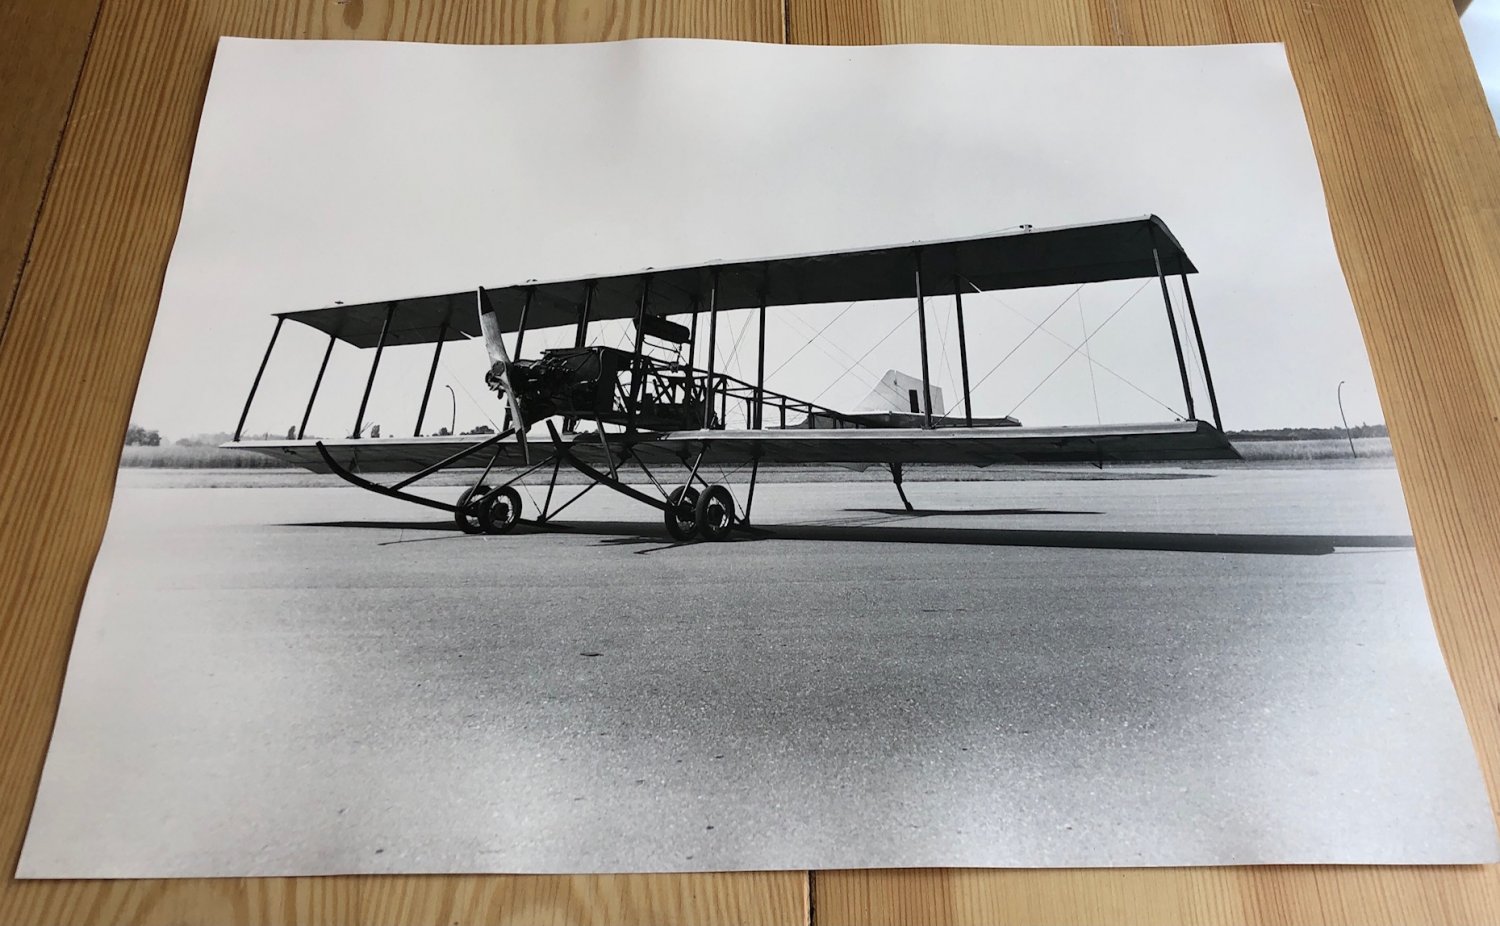 ESCH, Winfried (Fotograf):  Großformatige Original-Photographie eines historischen Flugzeugs oder Flugzeugnachbaus. (Historische Photographien eines Doppeldecker-Flugzeugs aus den Anfängen der Fluggeschichte). 